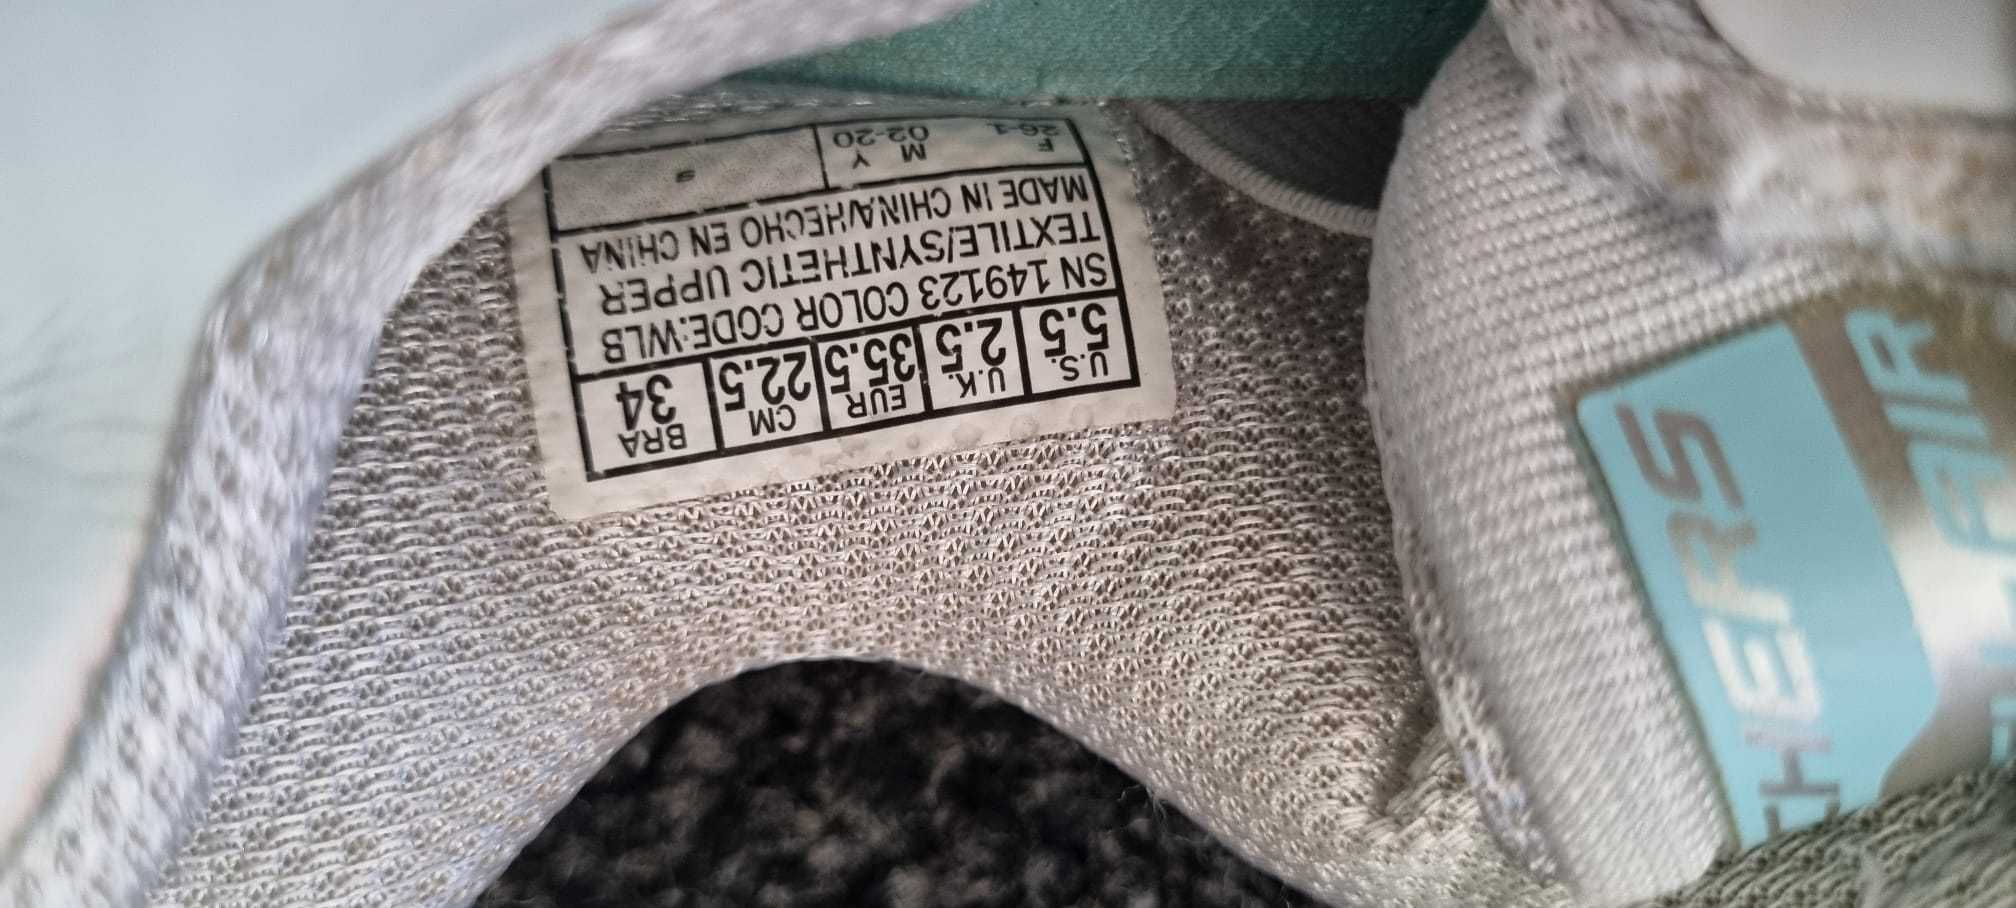 Adidasi Skeachers copii marime 34 (22.5 cm)